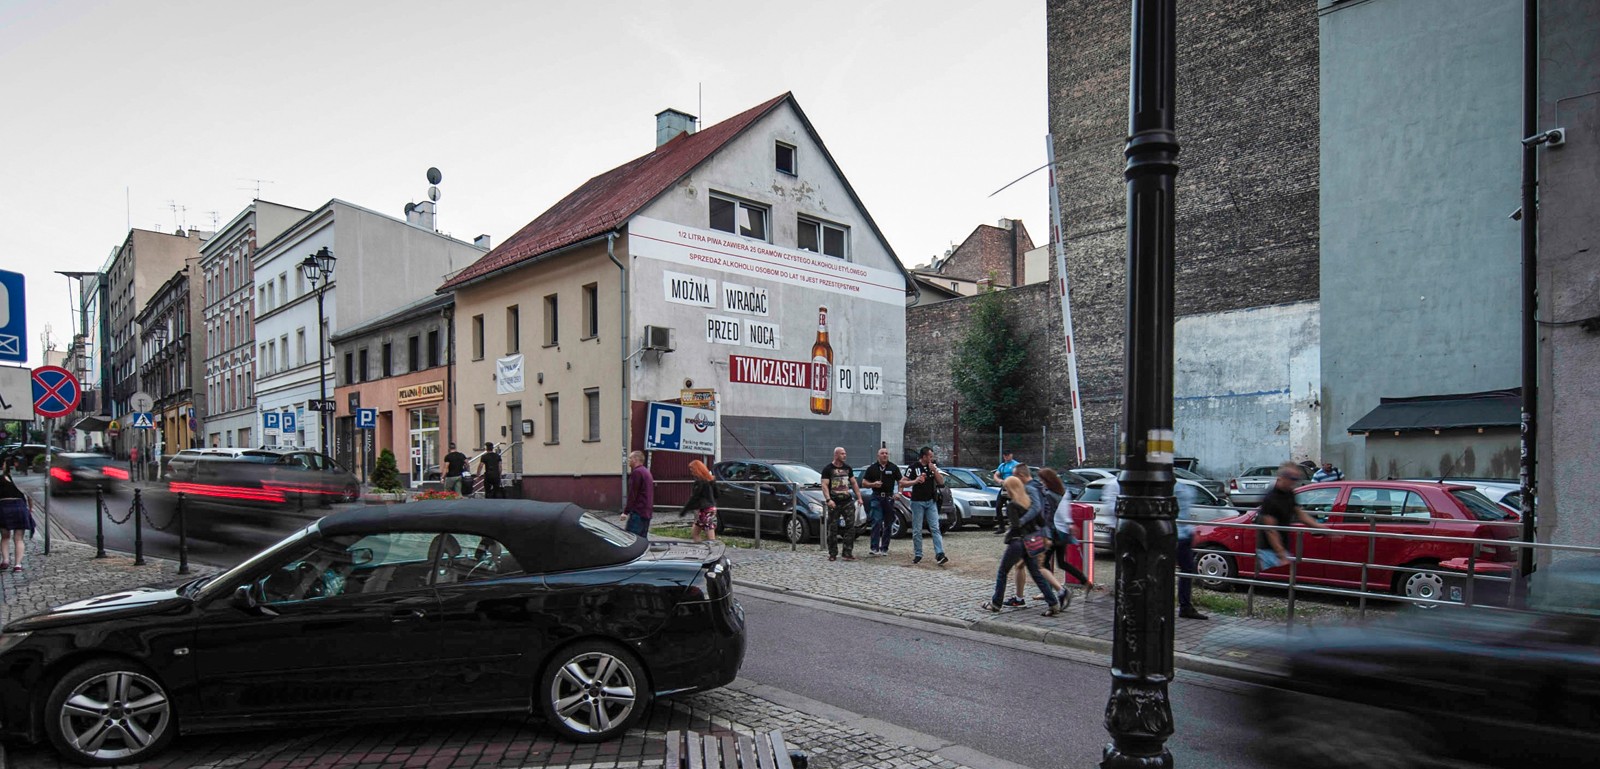 Mural reklamowy dla EB w Katowicach | Tymczasem EB | Portfolio